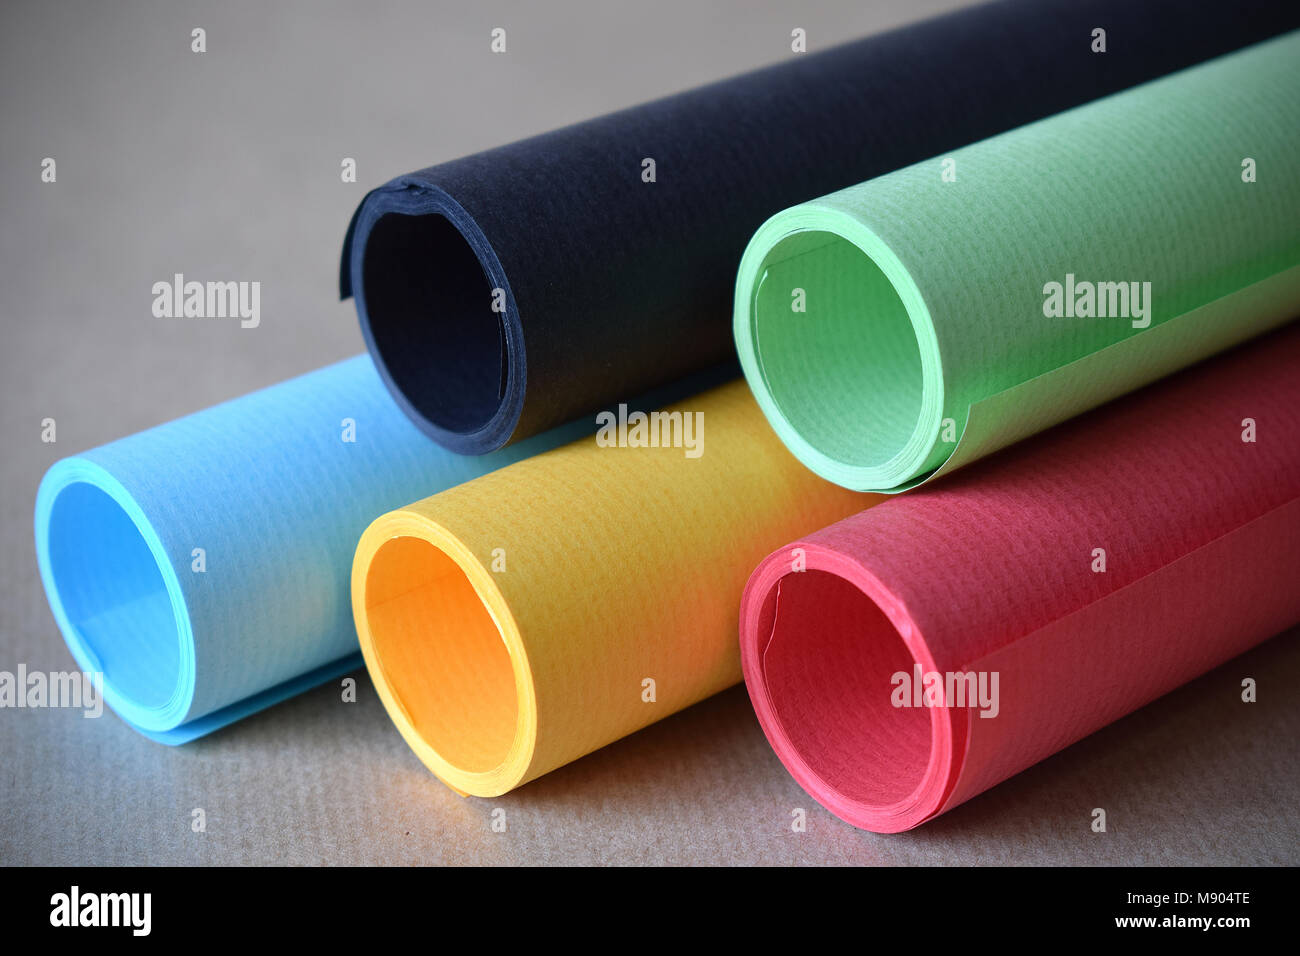 Tubo di carta immagini e fotografie stock ad alta risoluzione - Alamy